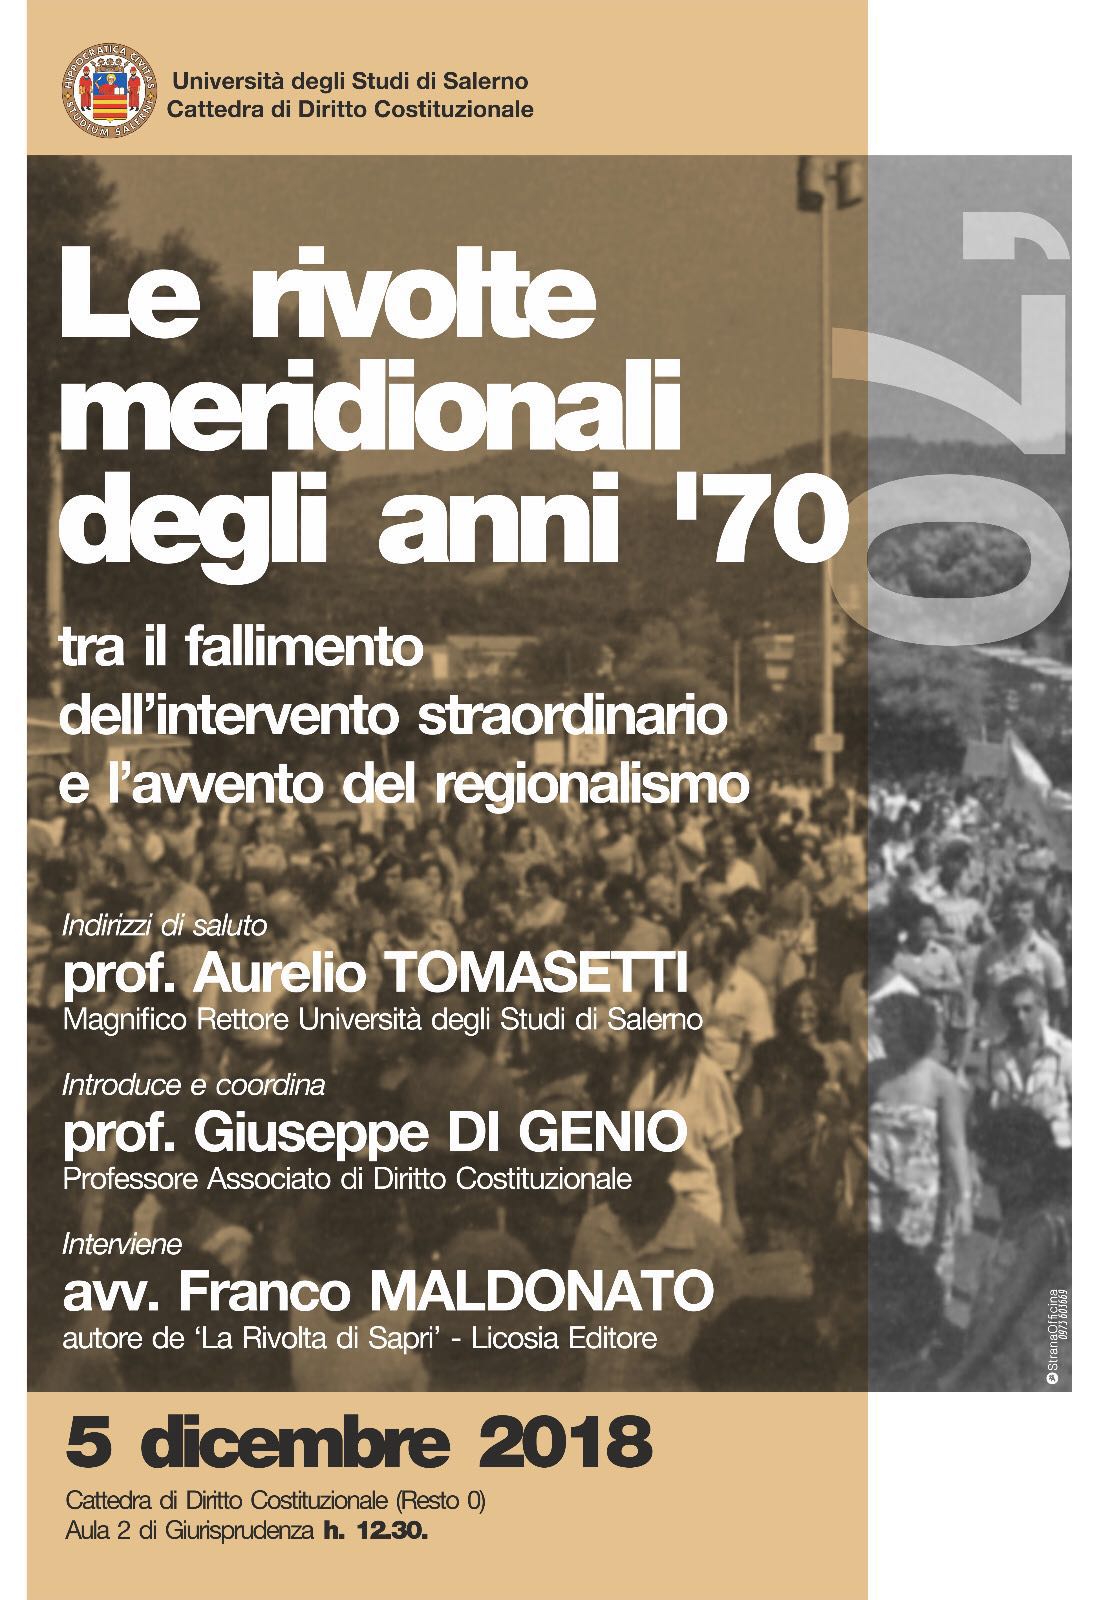 Le rivolte meridionali degli anni ’70, l’incontro all’Università di Salerno